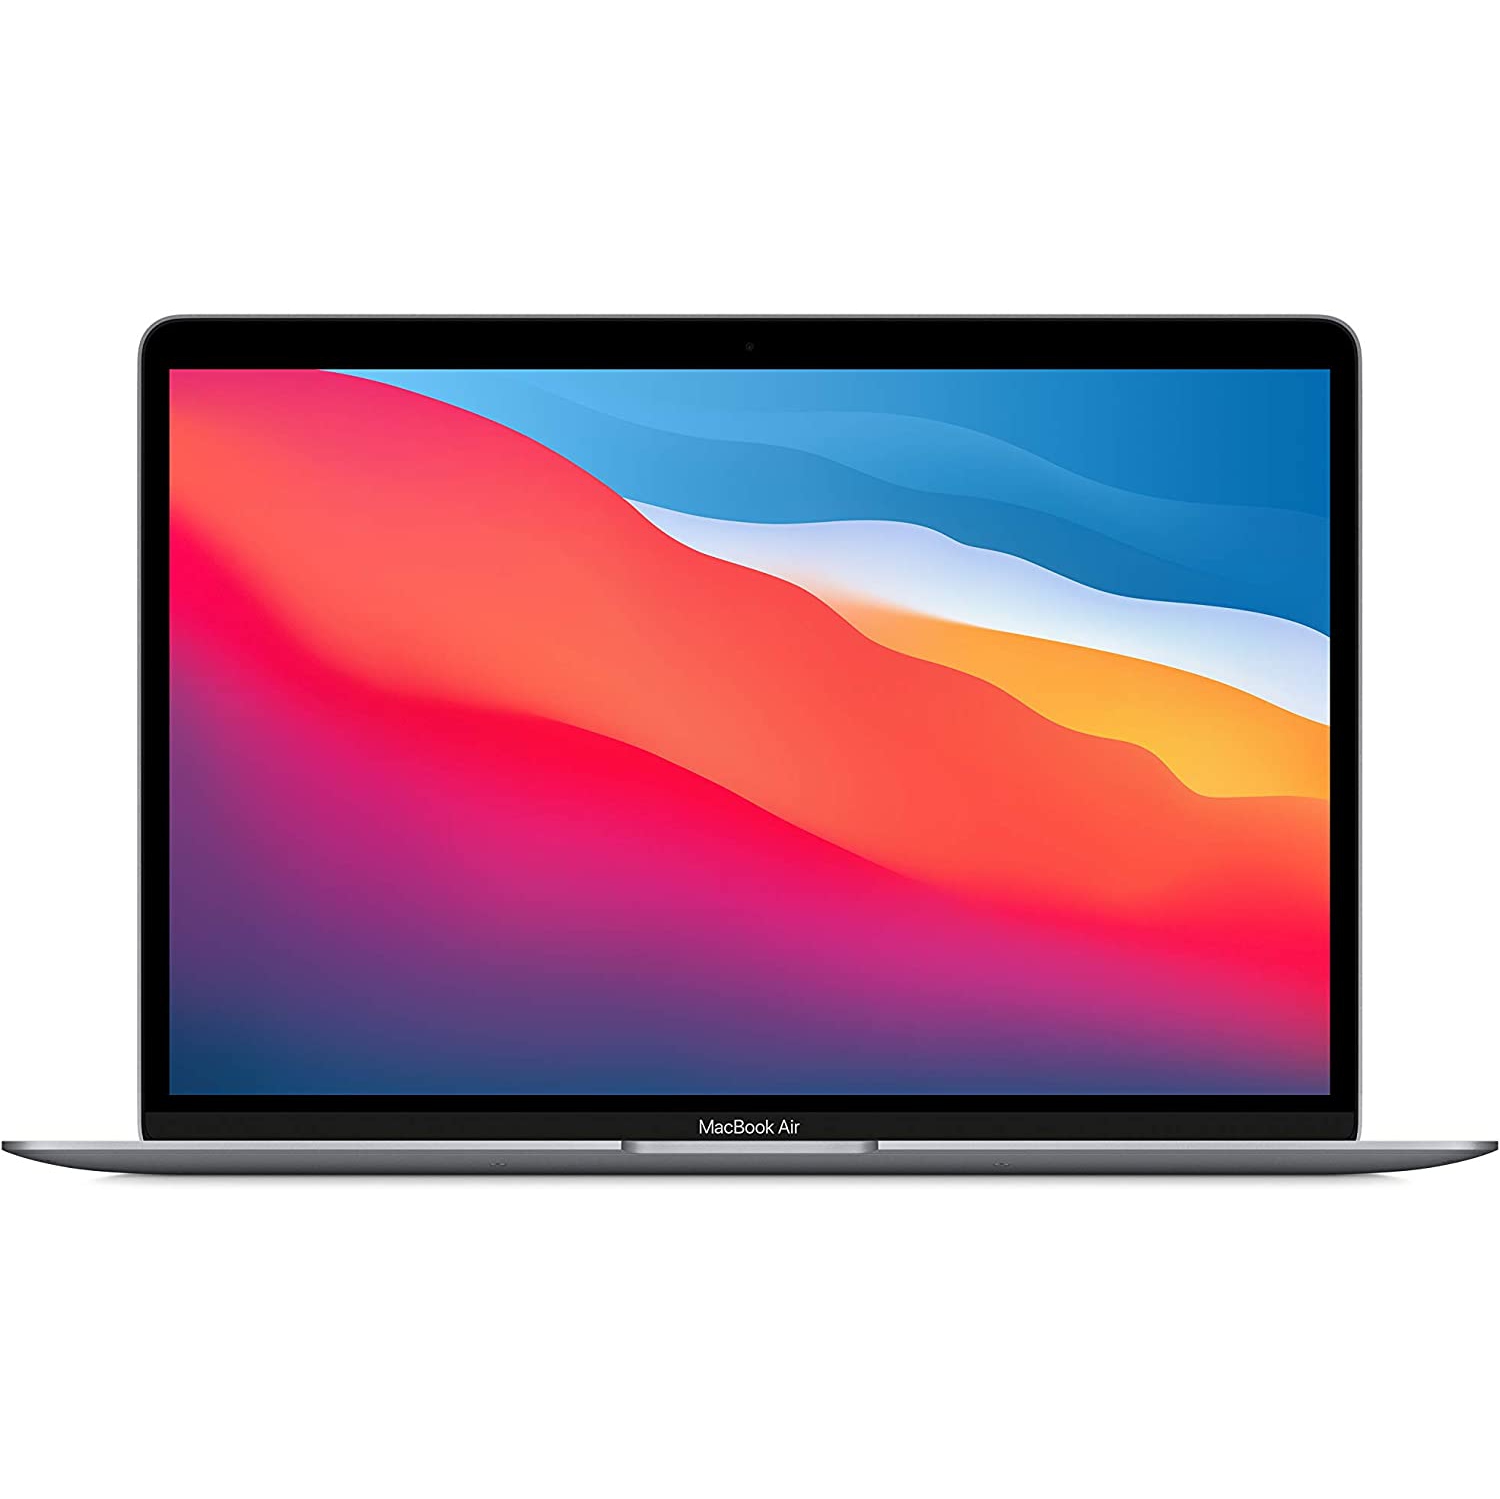 Refurbished (Excellent) - Apple MacBook Air 13.3" (Fall 2020) - Space Grey (Apple M1 Chip / 256GB SSD / 8GB RAM) - En - Certified Refurbished